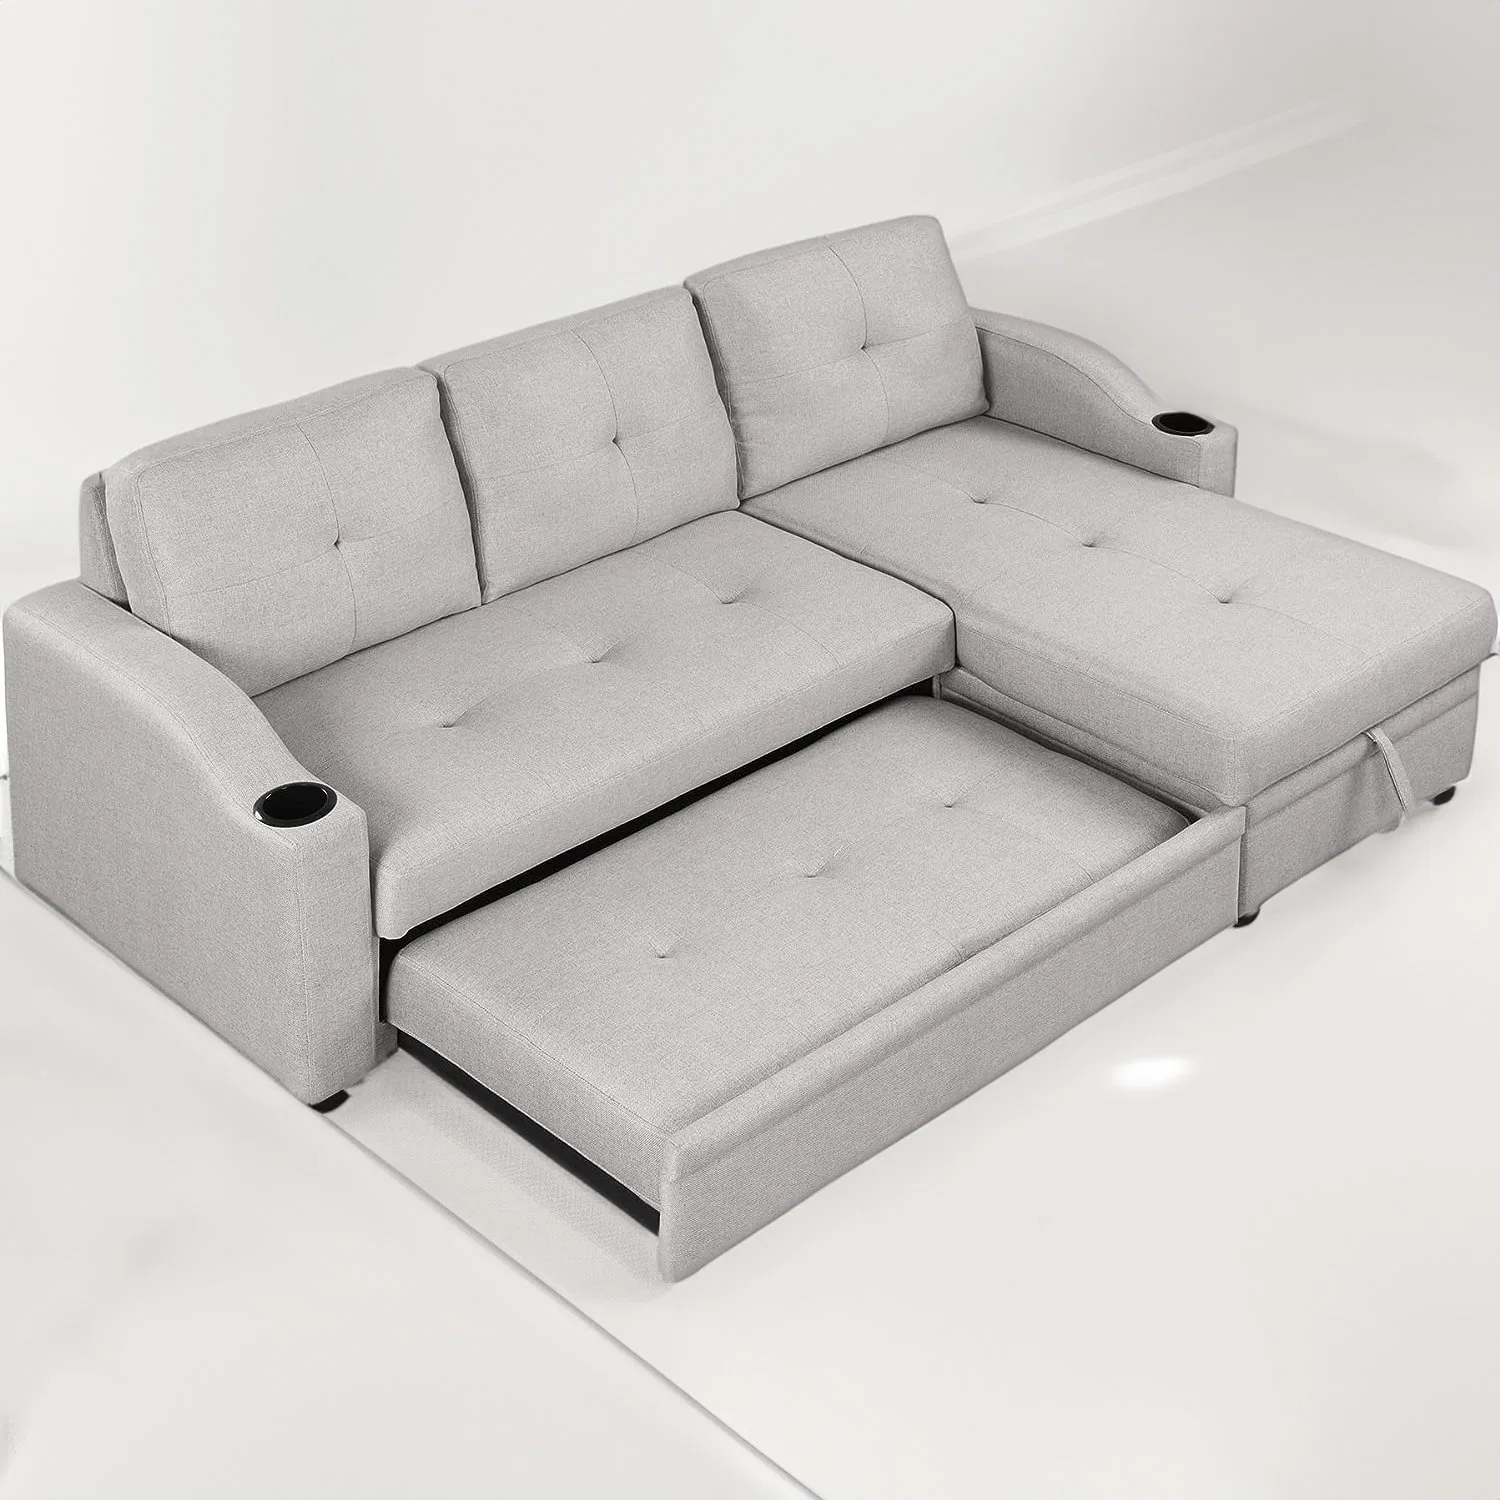 Fabricación personalizada Huayang Muebles Muebles de salón moderno y funcional Sofa cama plegable cama Cum